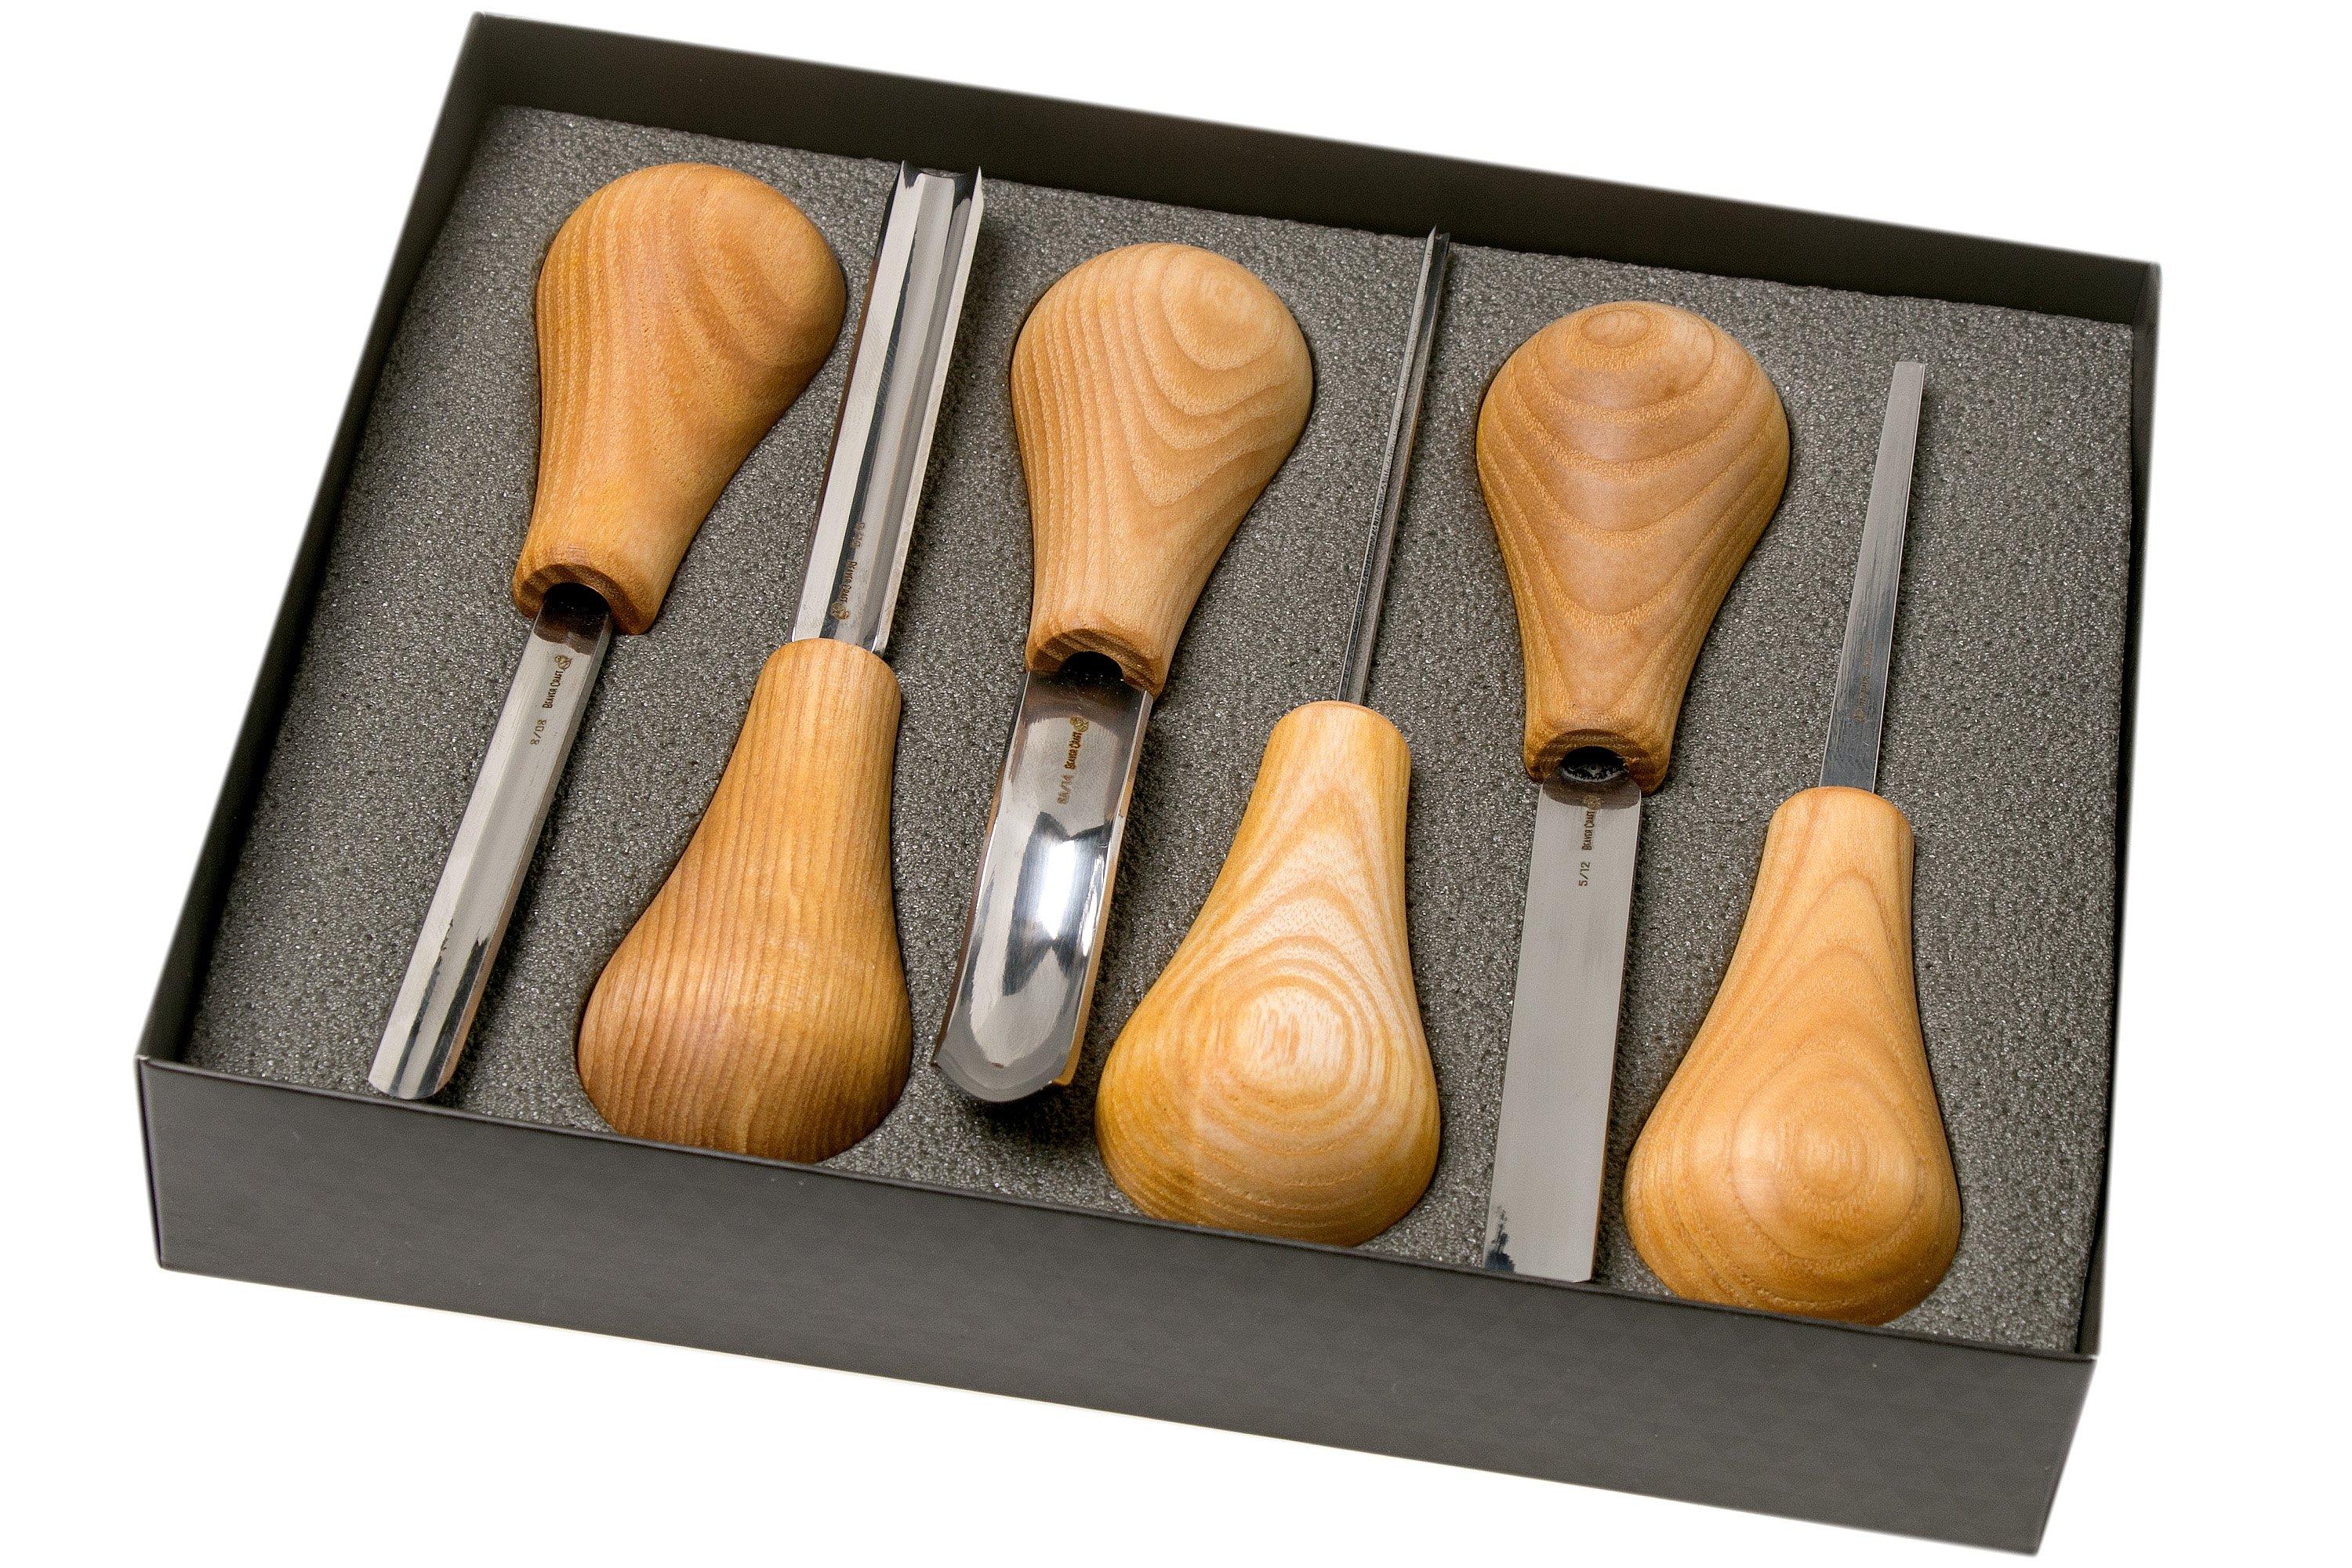 BeaverCraft Comfort Bird Carving Hobby Kit DIY01, wood carving set